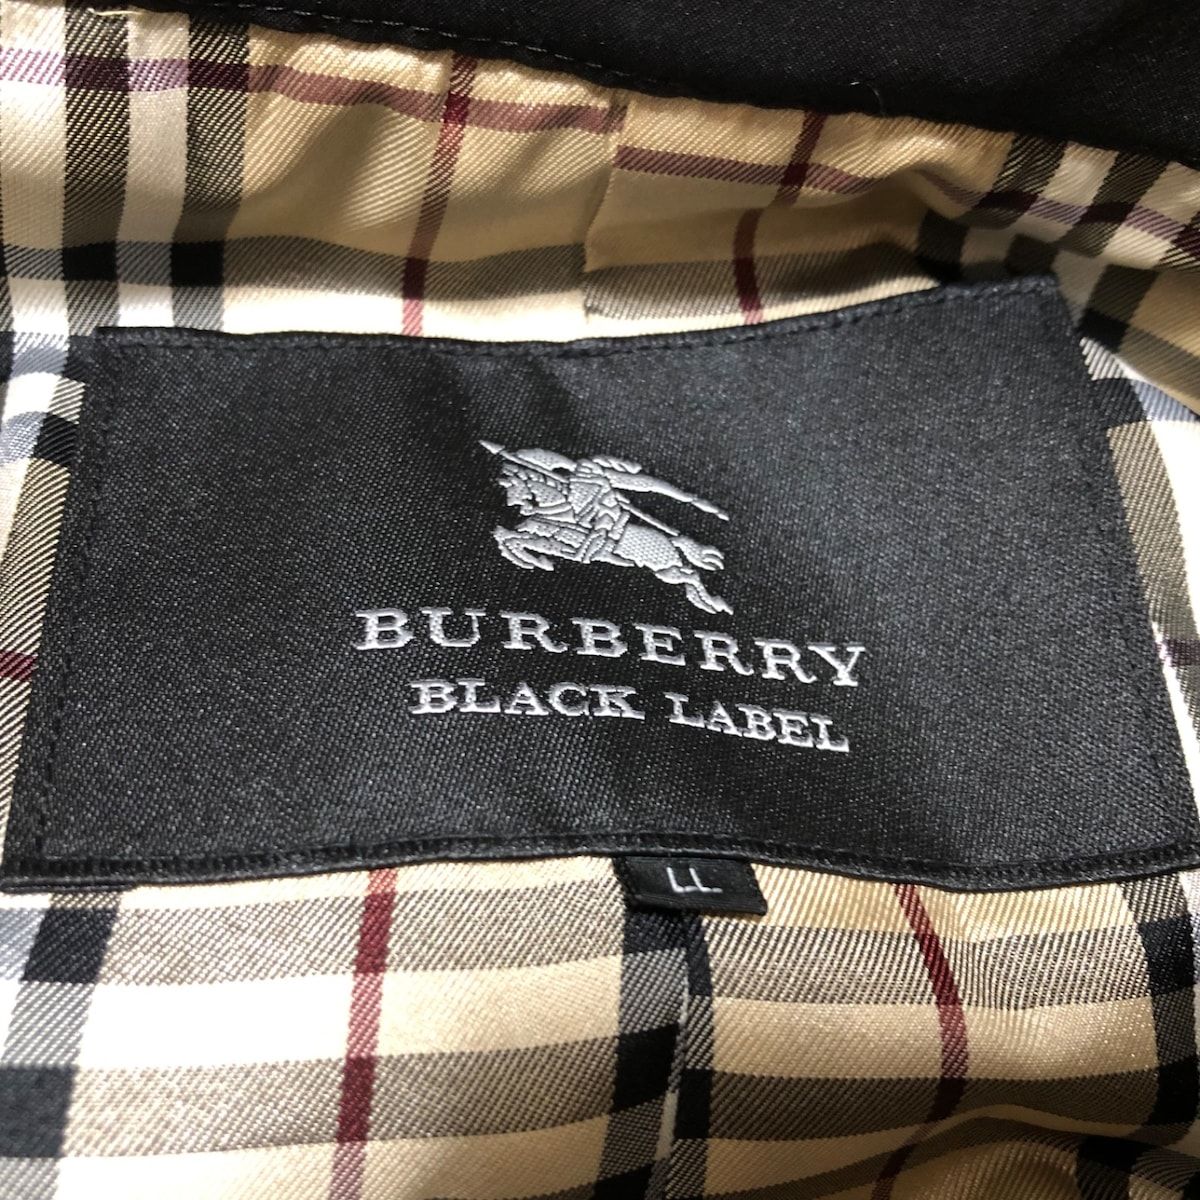 Burberry Black Label(バーバリーブラックレーベル) トレンチコート ...